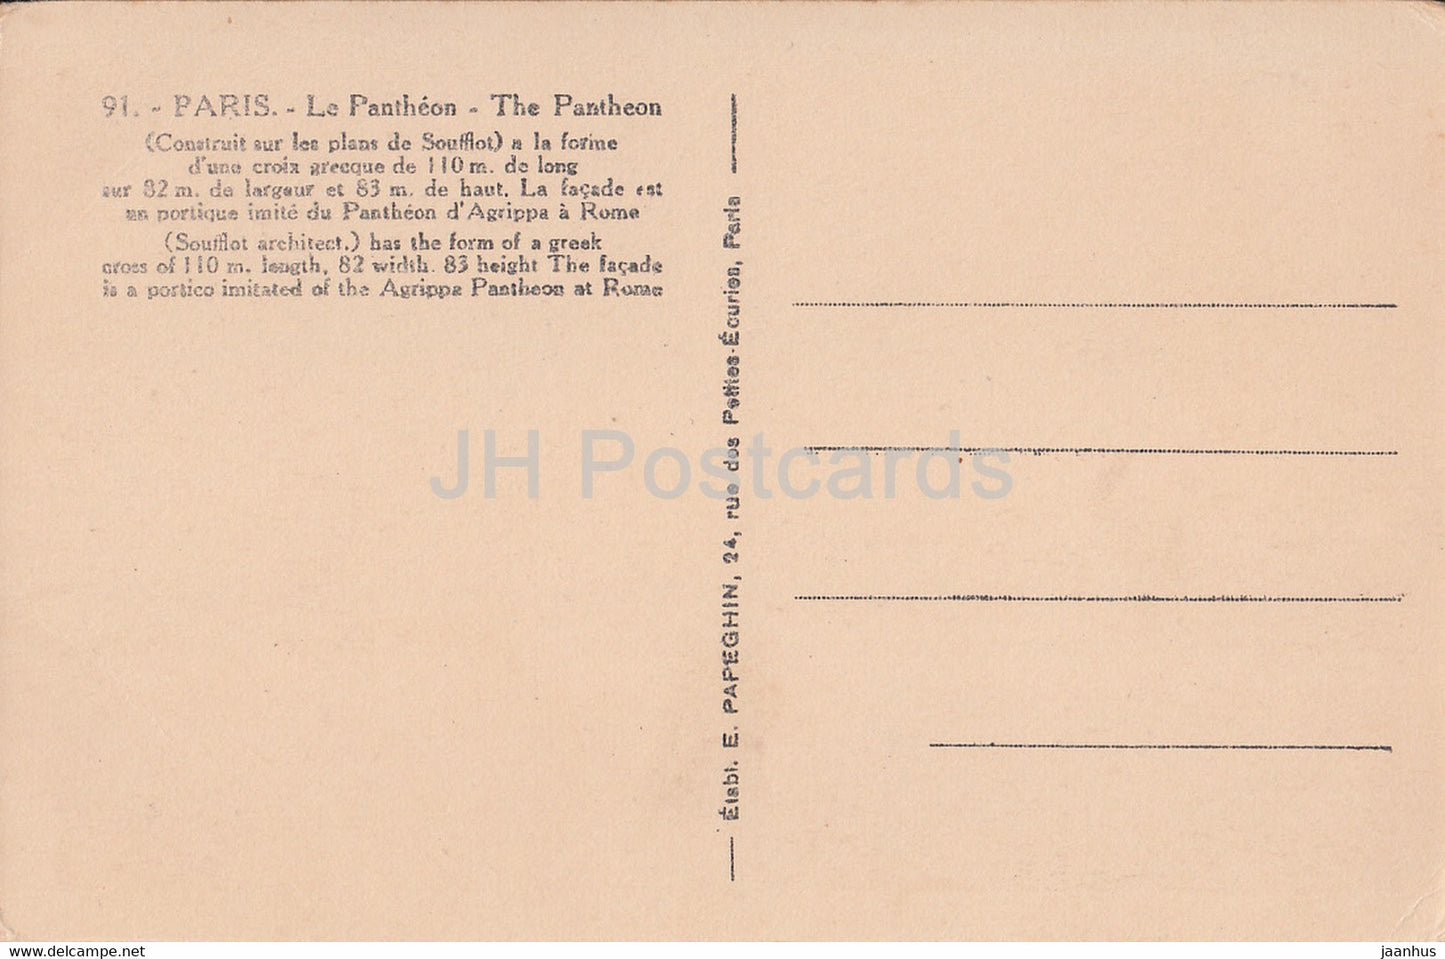 Paris - Le Pantheon - Das Pantheon - 91 - alte Postkarte - Frankreich - unbenutzt